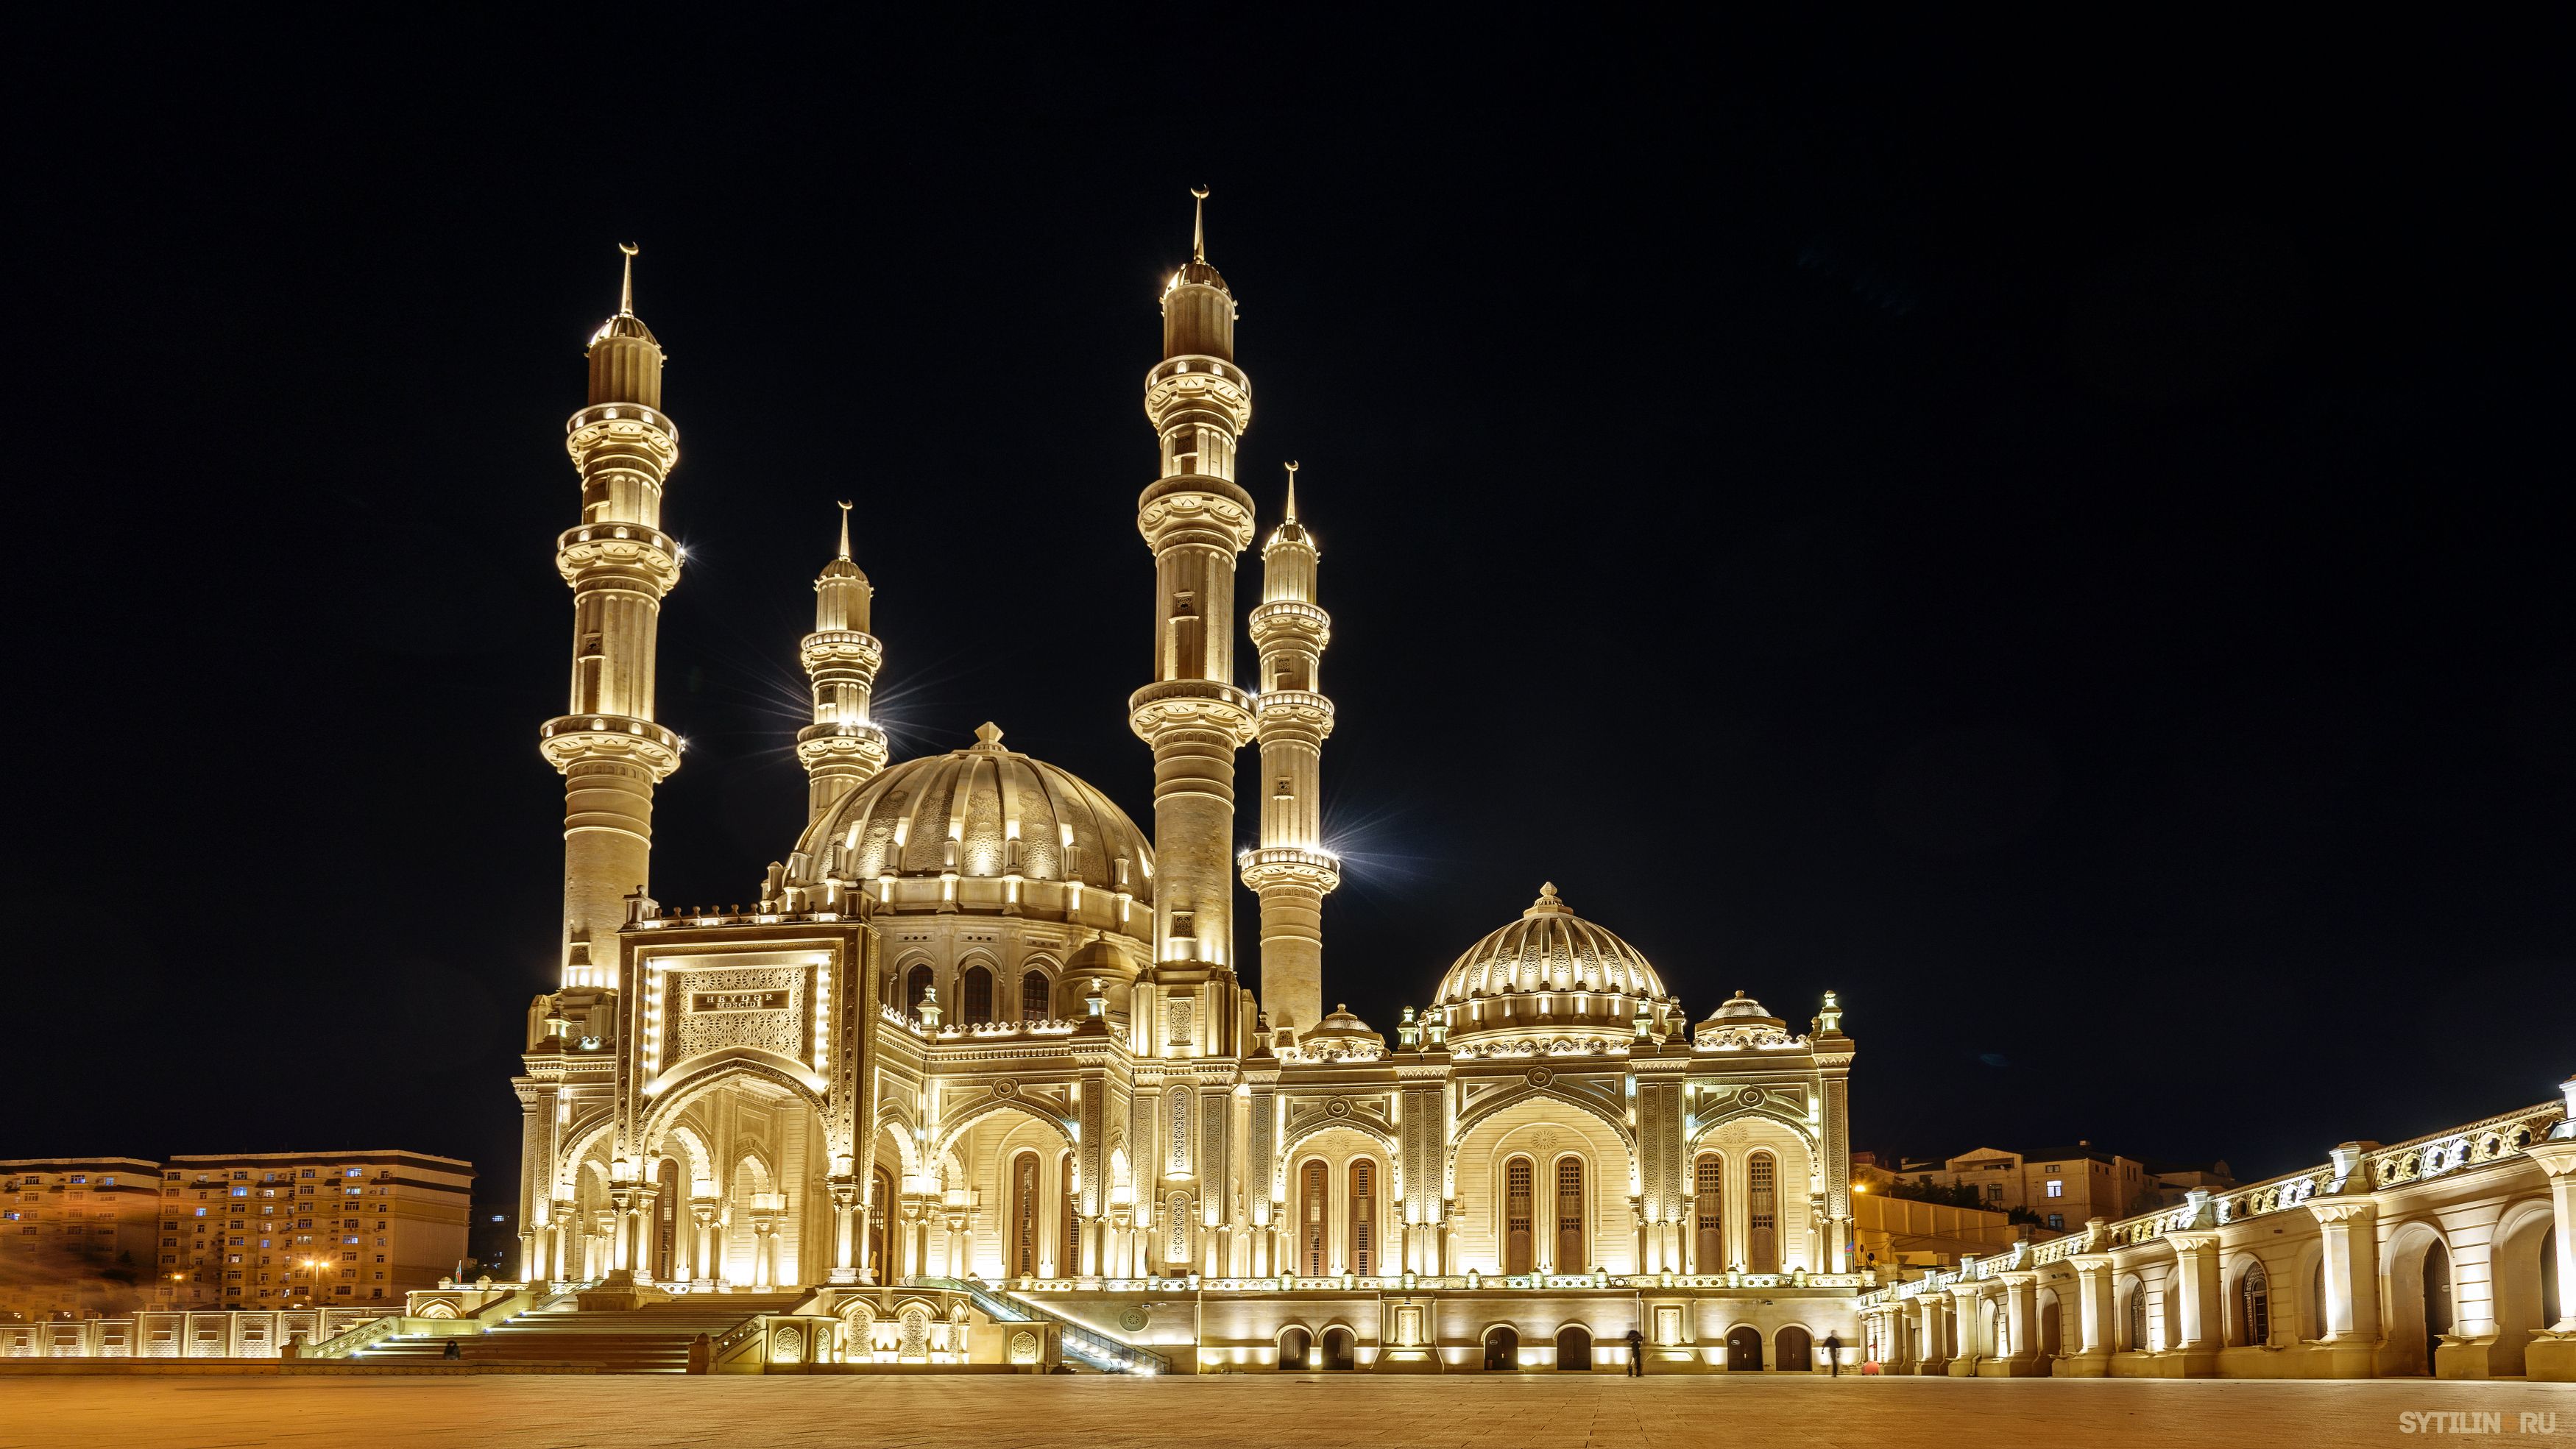 мечеть, гейдара, алиев, баку, азербайджан, ночь, ночной, вид, подсветка, золотой, ислам, святыня, религия, достопримечательность, мусульманский, освещение, архитектура, традиционный,, Сытилин Павел